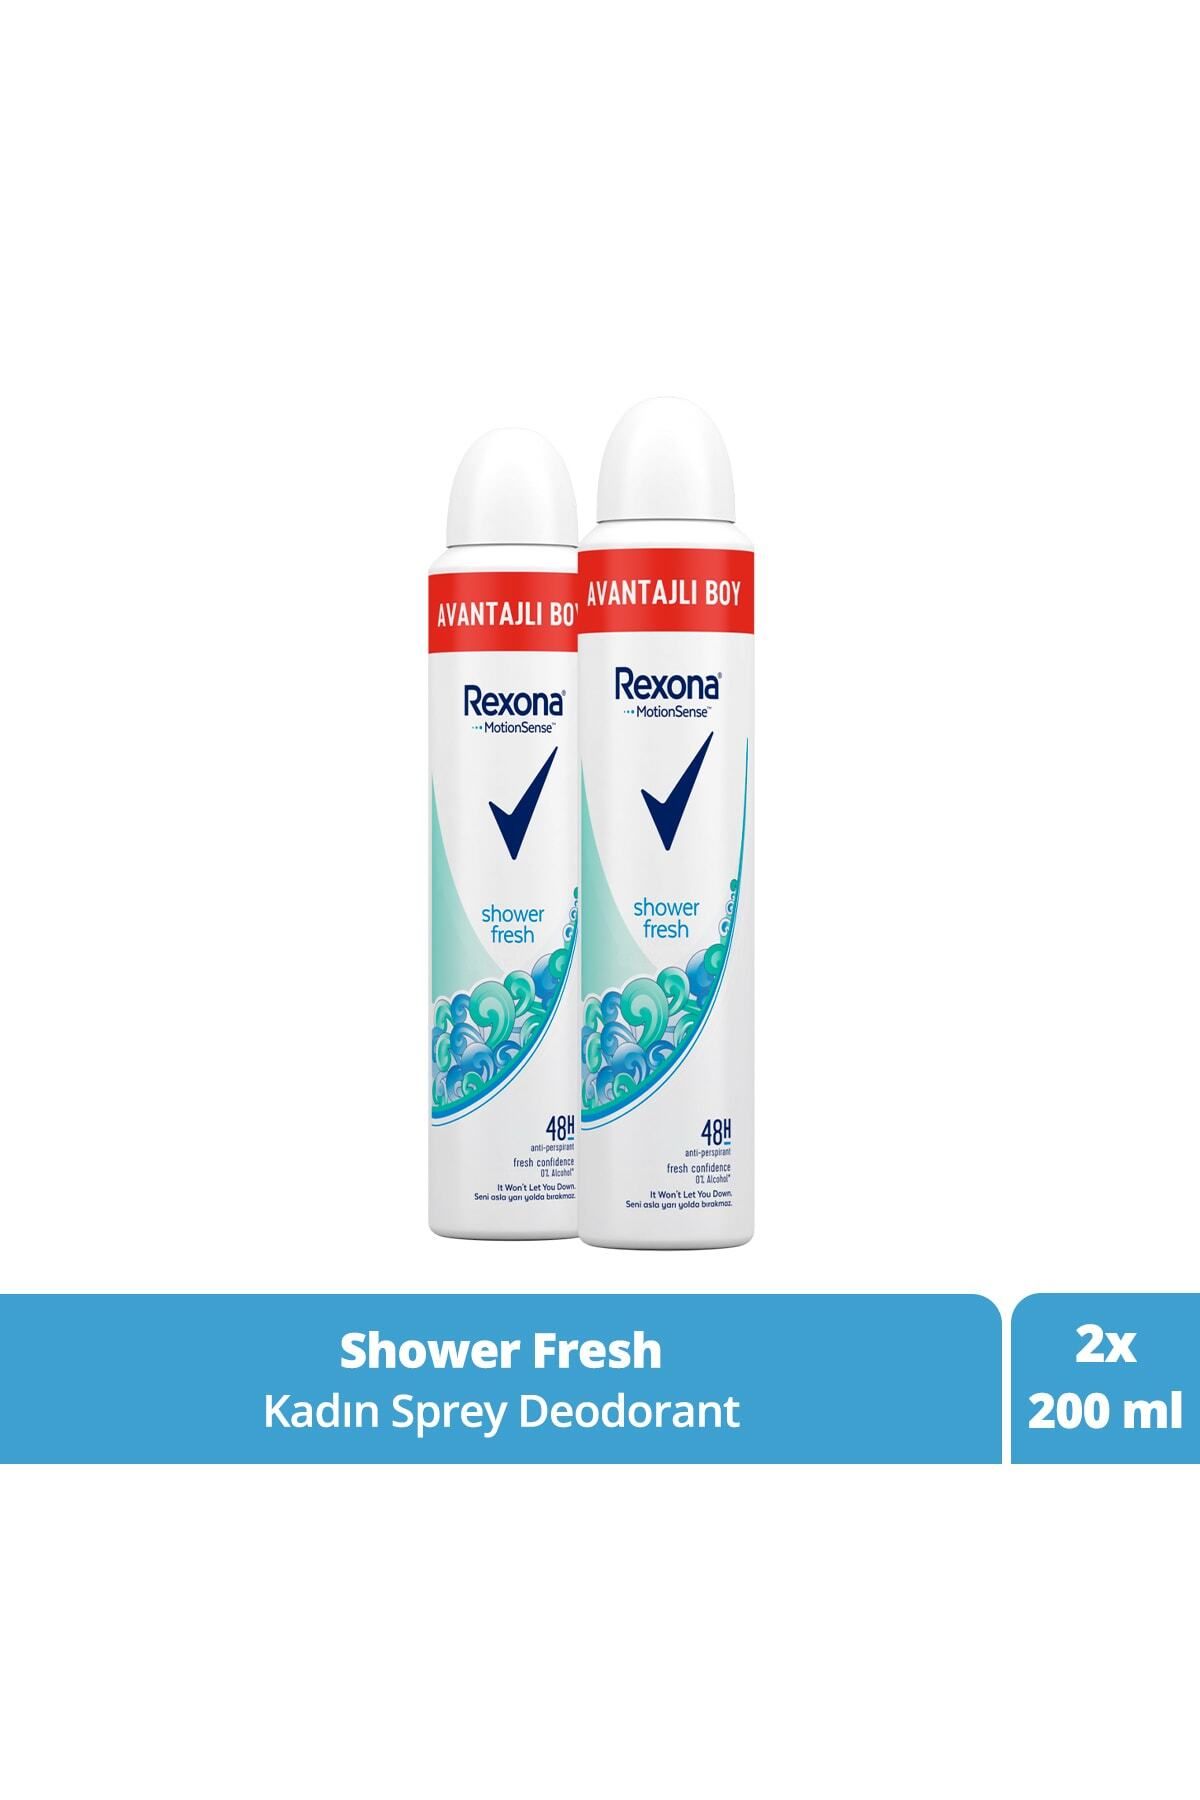 Rexona Kadın Sprey Deodorant Shower Fresh Avantajlı Boy 200 ml X2 Adet